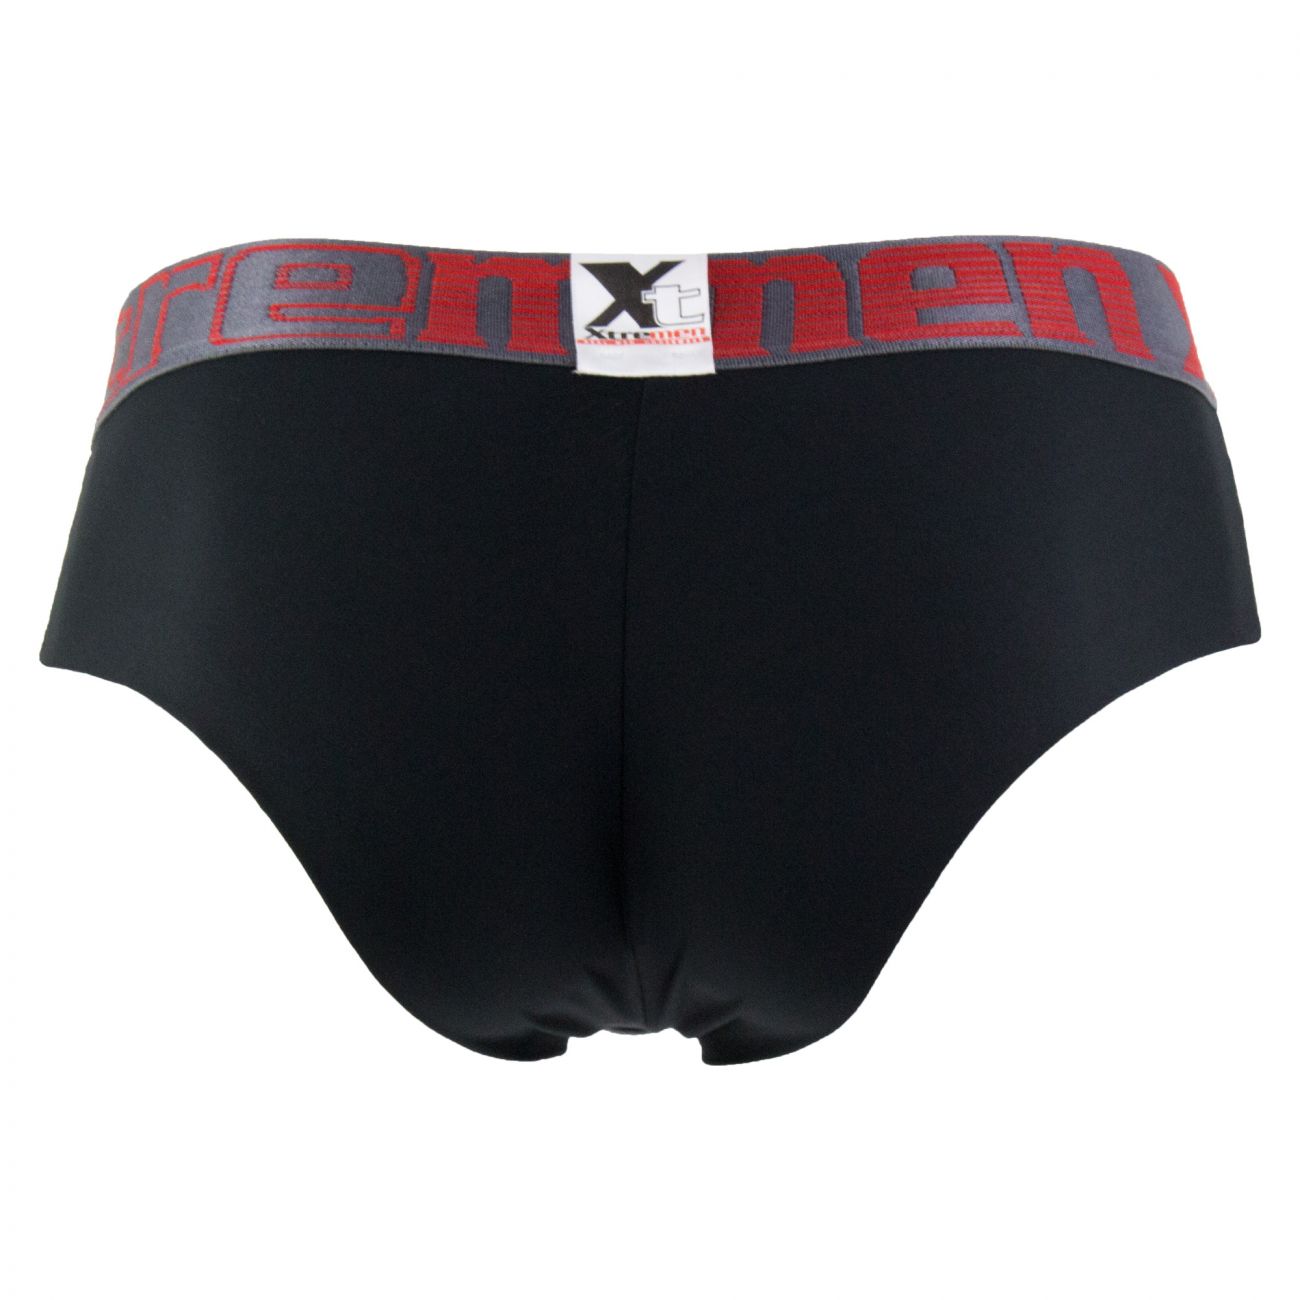 Mens Underwear: Xtremen 91020 Microfiber Briefs | eBay